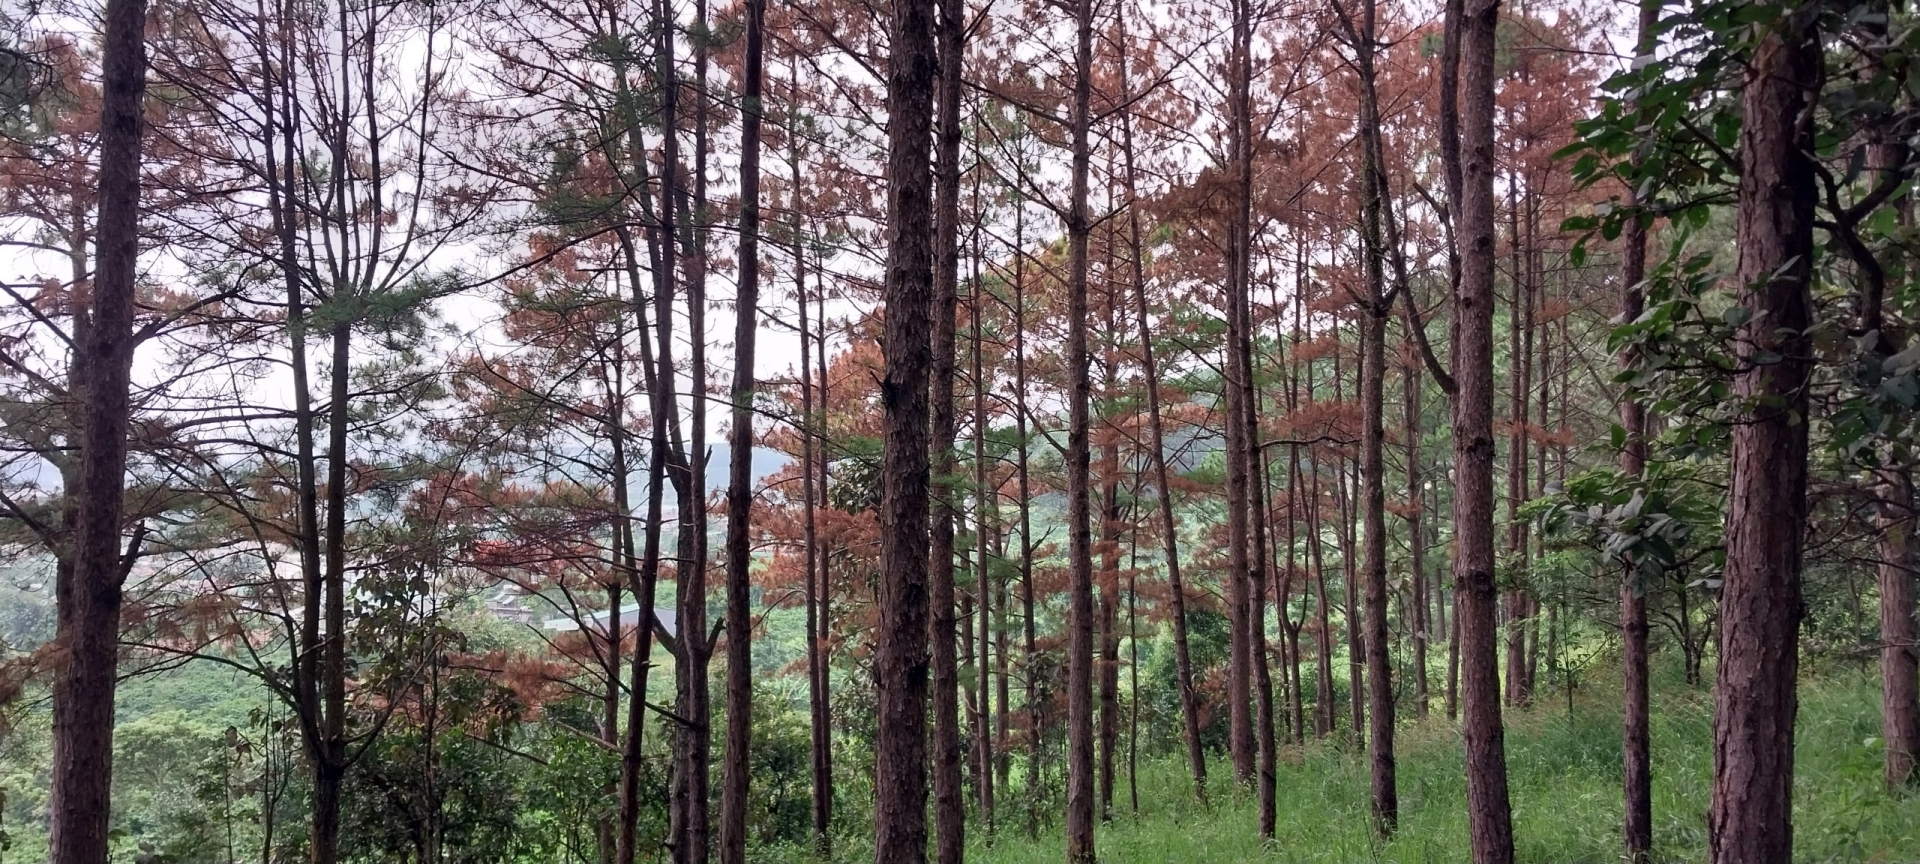 Kiểm tra, xác minh việc thông rừng bị đầu độc tại Lâm Hà